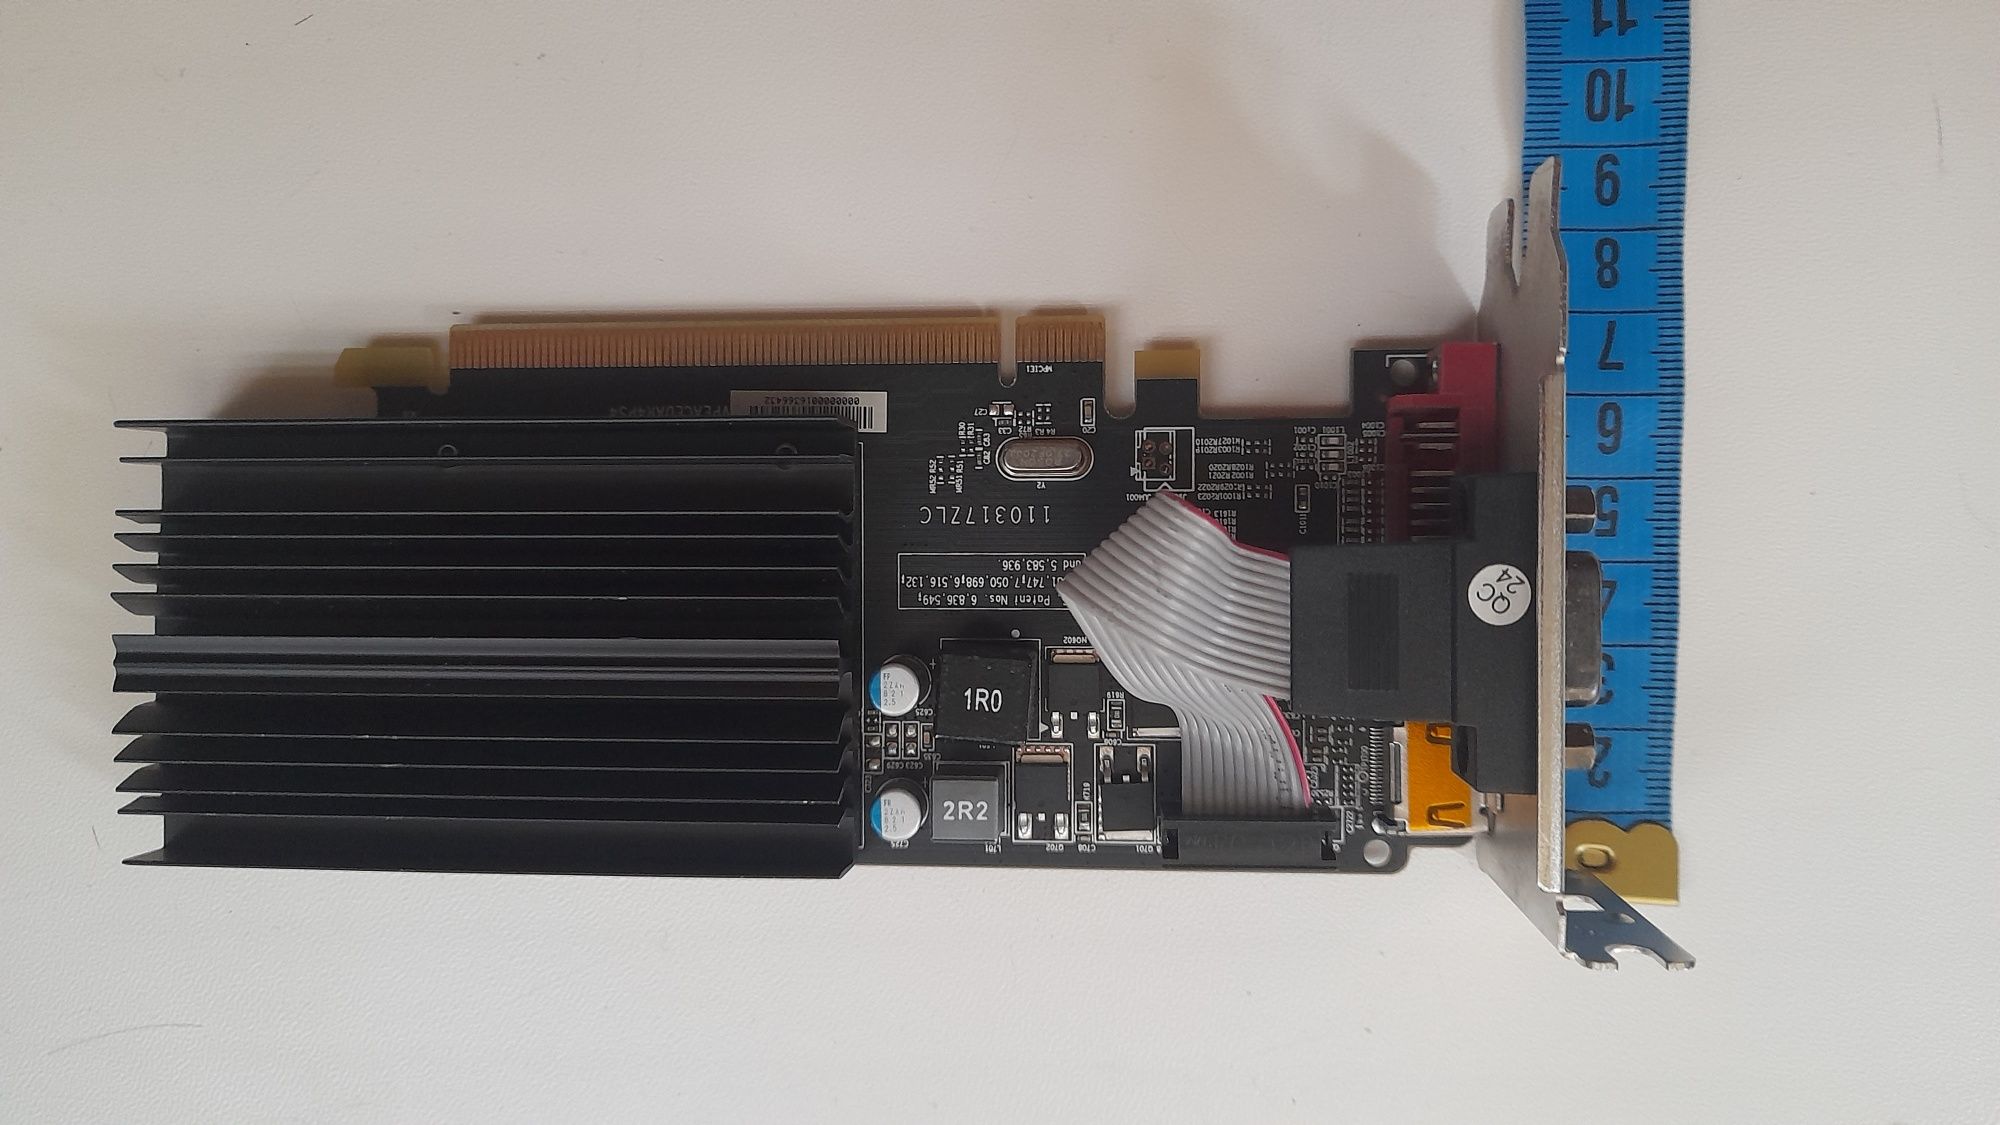 Видеокарта MSI AMD HD5450 низкопрофильная (под тонкий корпус), 1 Гб